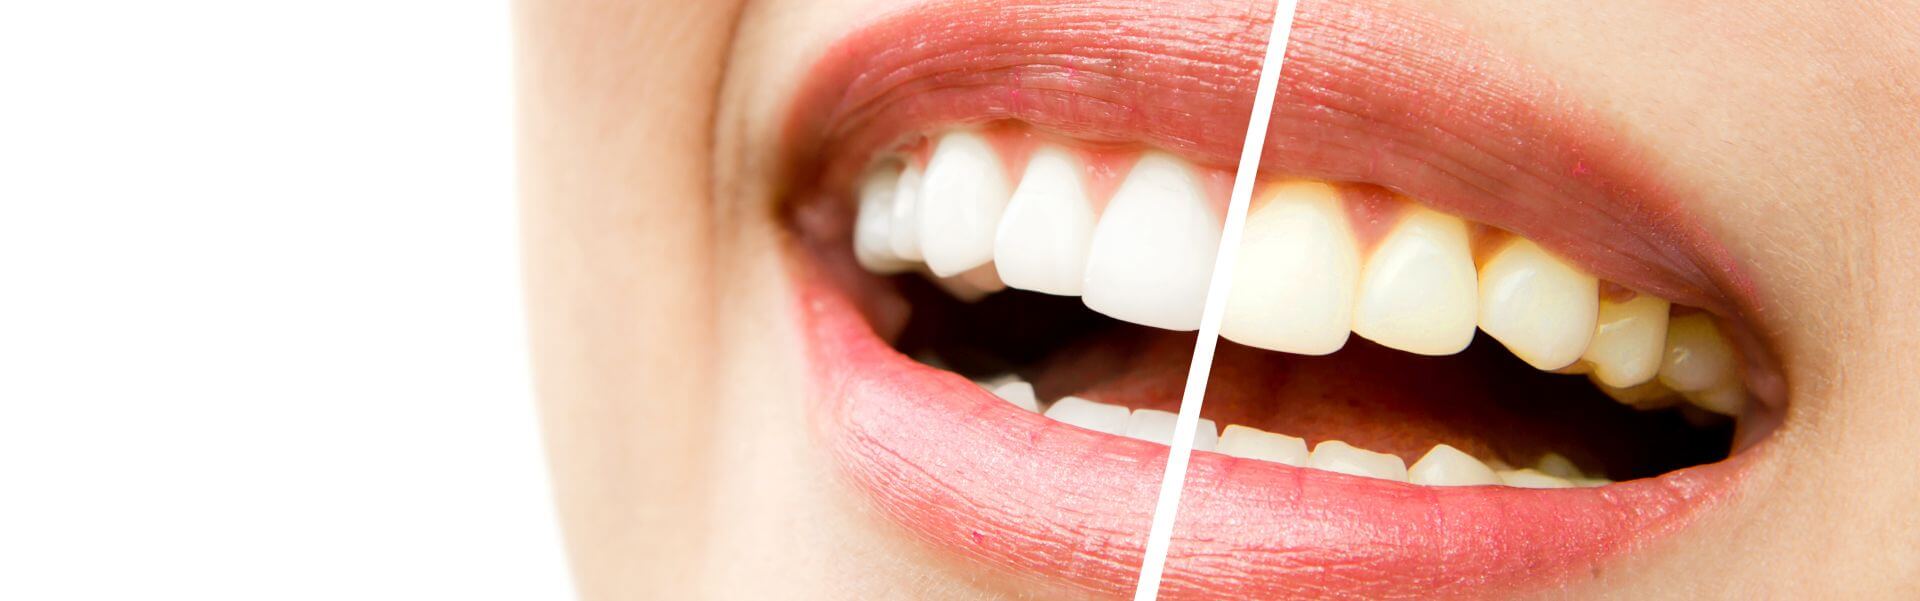 wybielanie zębów przed i po